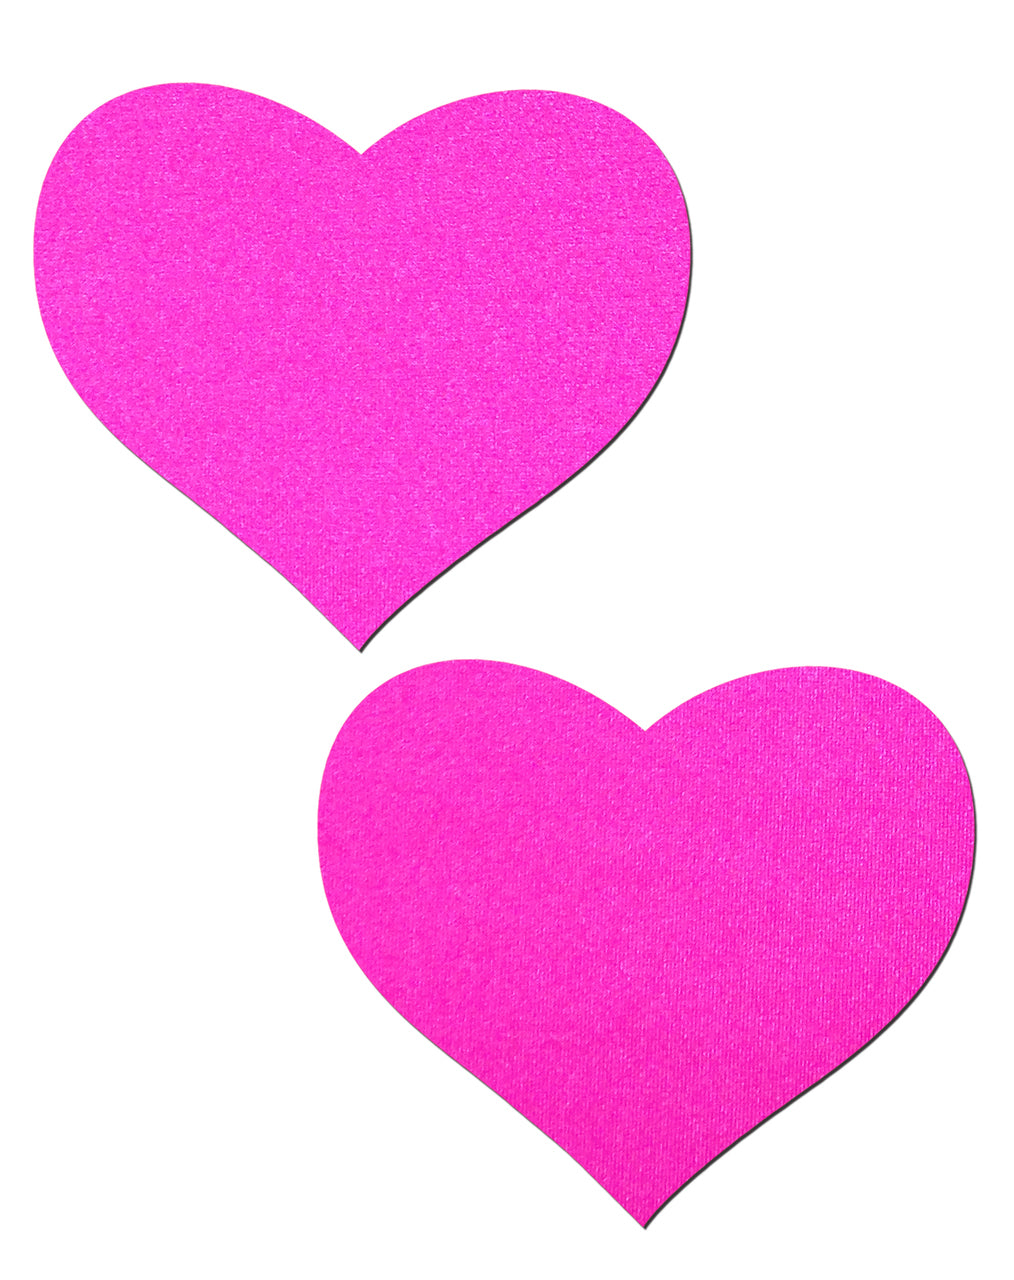 Love: Neon Pink Day-Glow Heart pasties